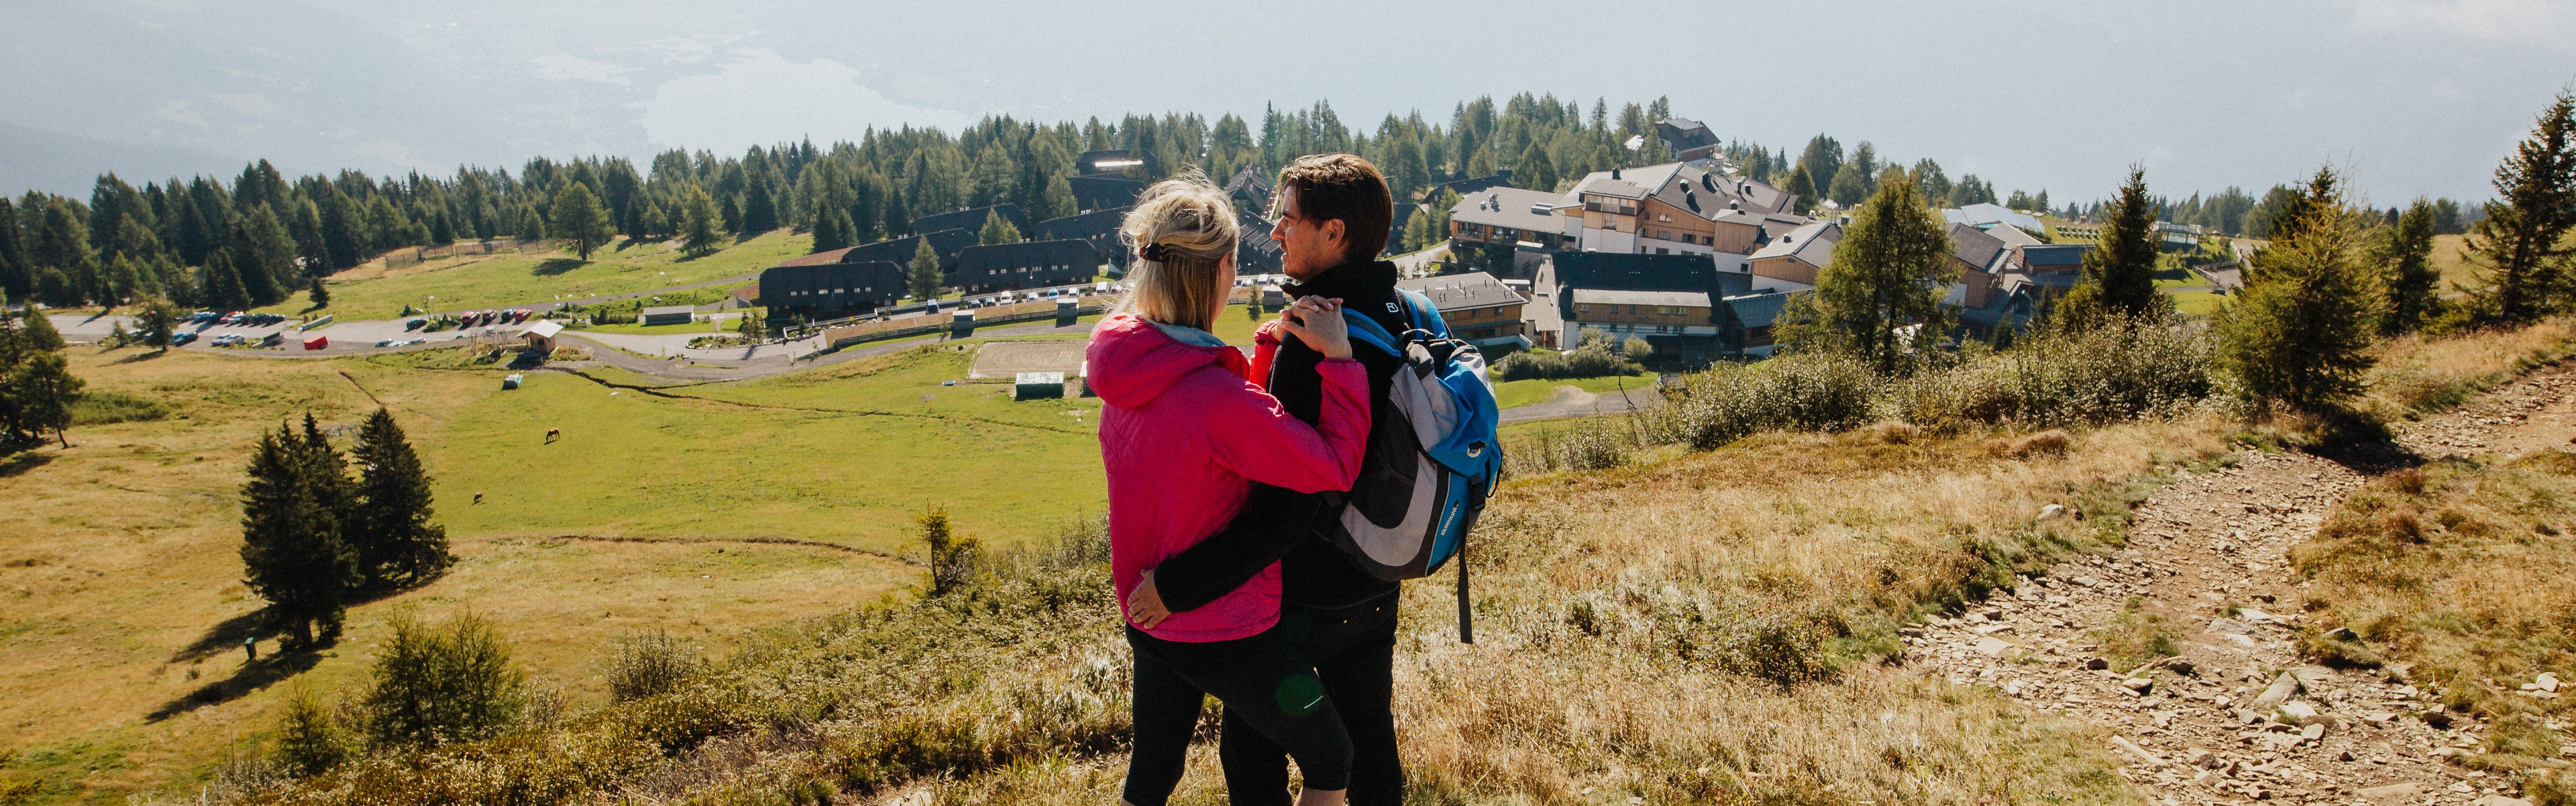 Mann und Frau beim Rasten nach einer Wanderung im Urlaub nahe des Mountain Resort Feuerberg in Kärnten